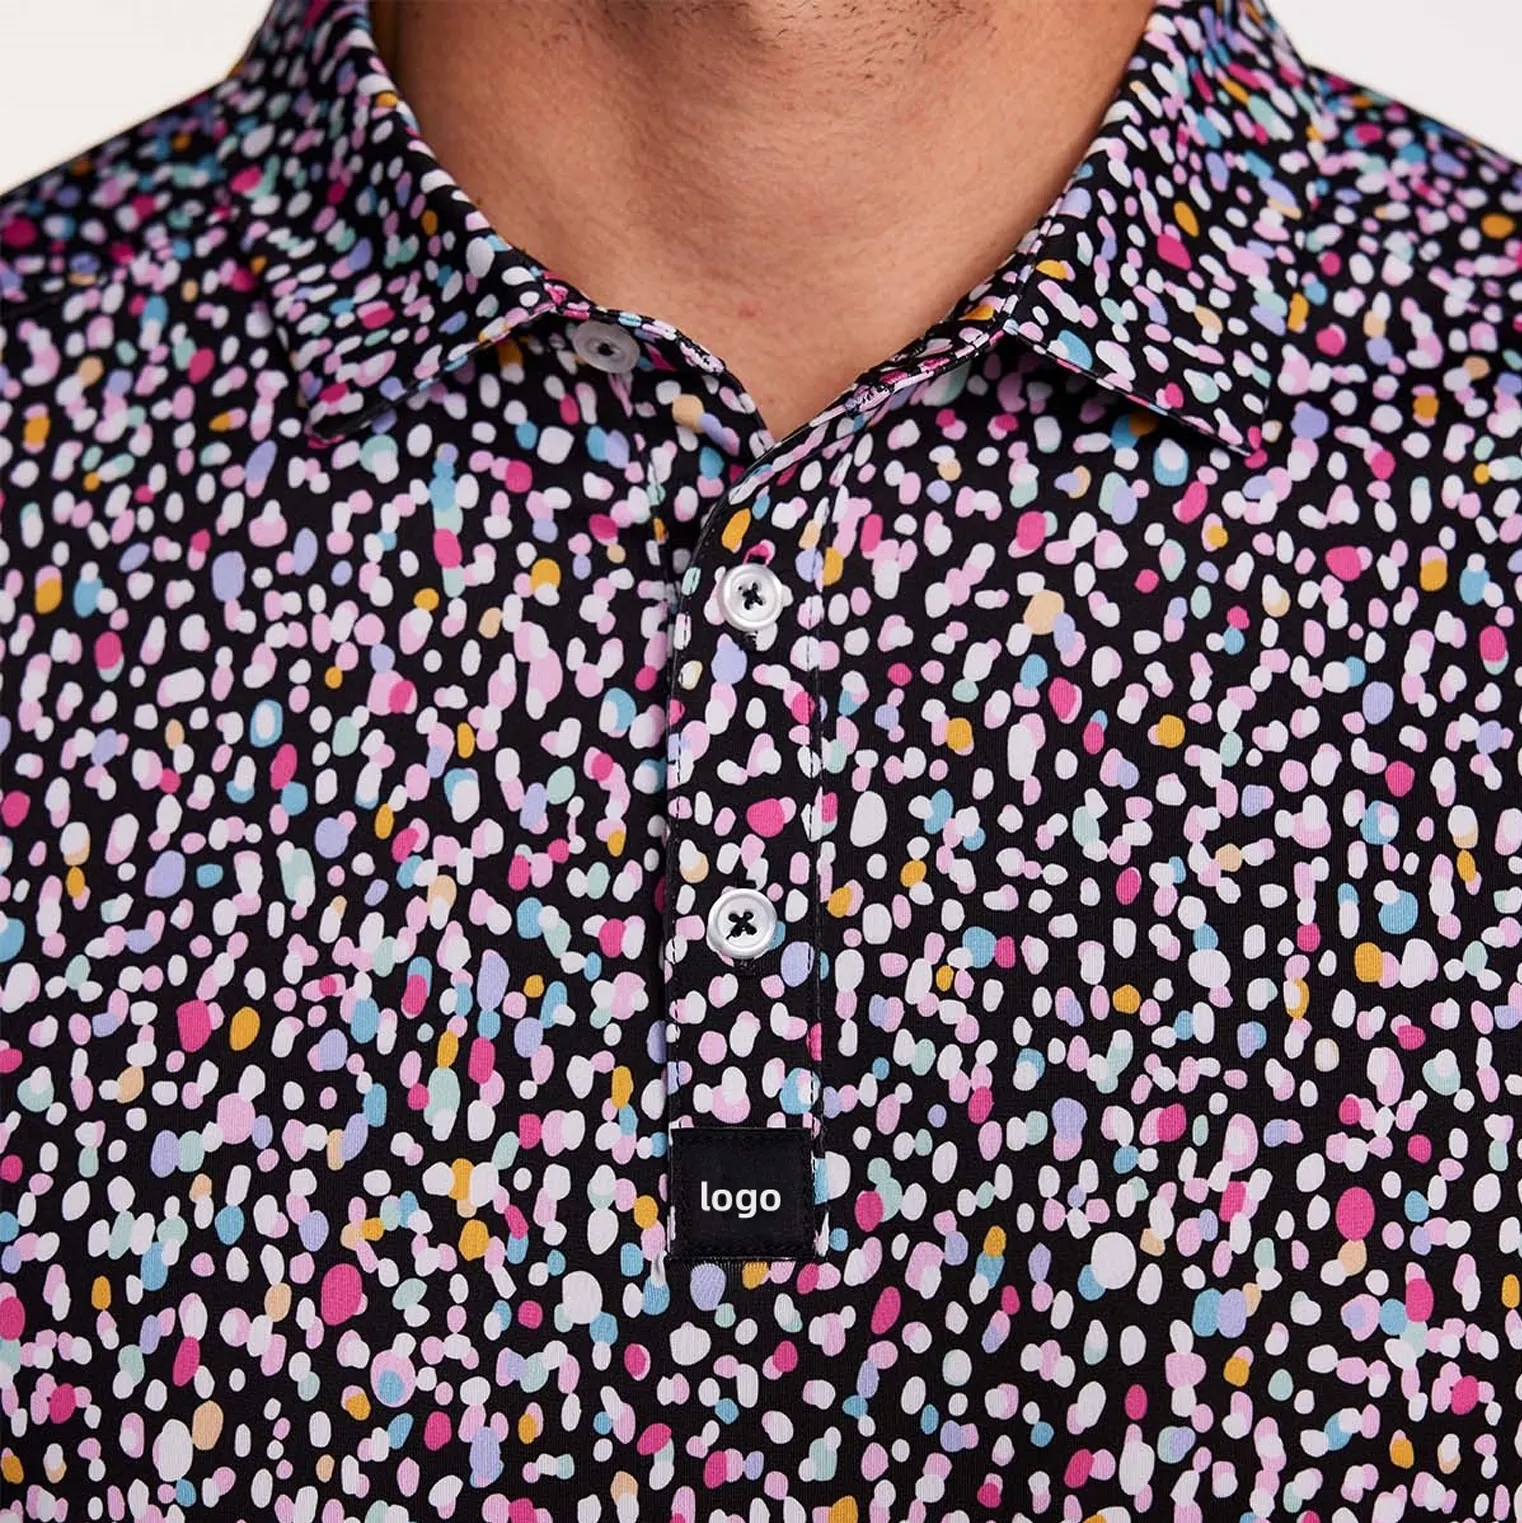 पुरुषों के लिए नई डिजाइन थोक ओईएम गोल्फ टीशर्ट पोलो शर्ट डिजिटल प्रिंटिंग गोल्फ पोलो शर्ट क्विक ड्राई कस्टम लोगो प्राइवेट लेबल